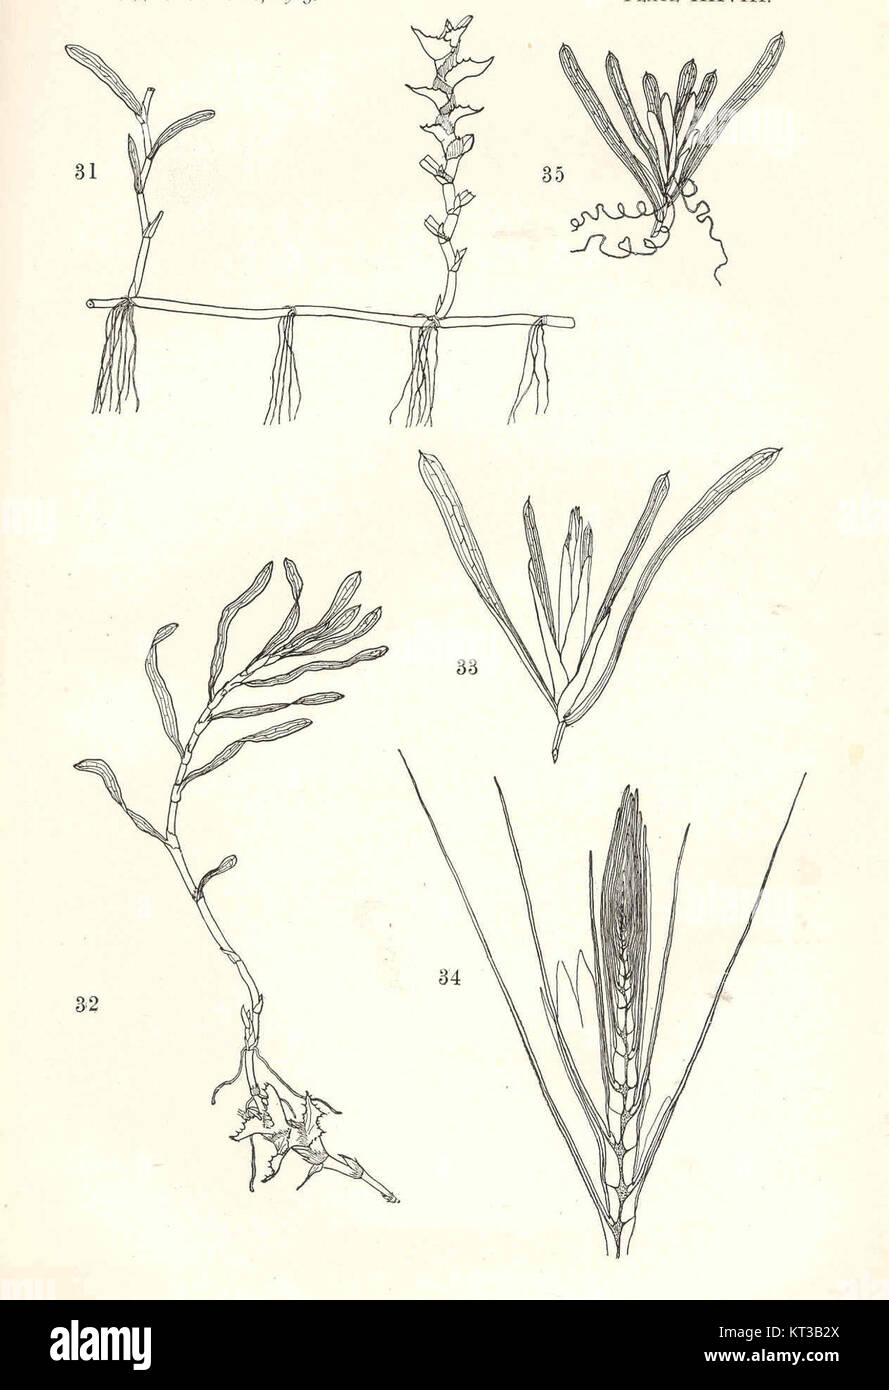 40048 Potamogeton crispus (31-32); Potamogeton zosterifolius (33-35) Stock Photo